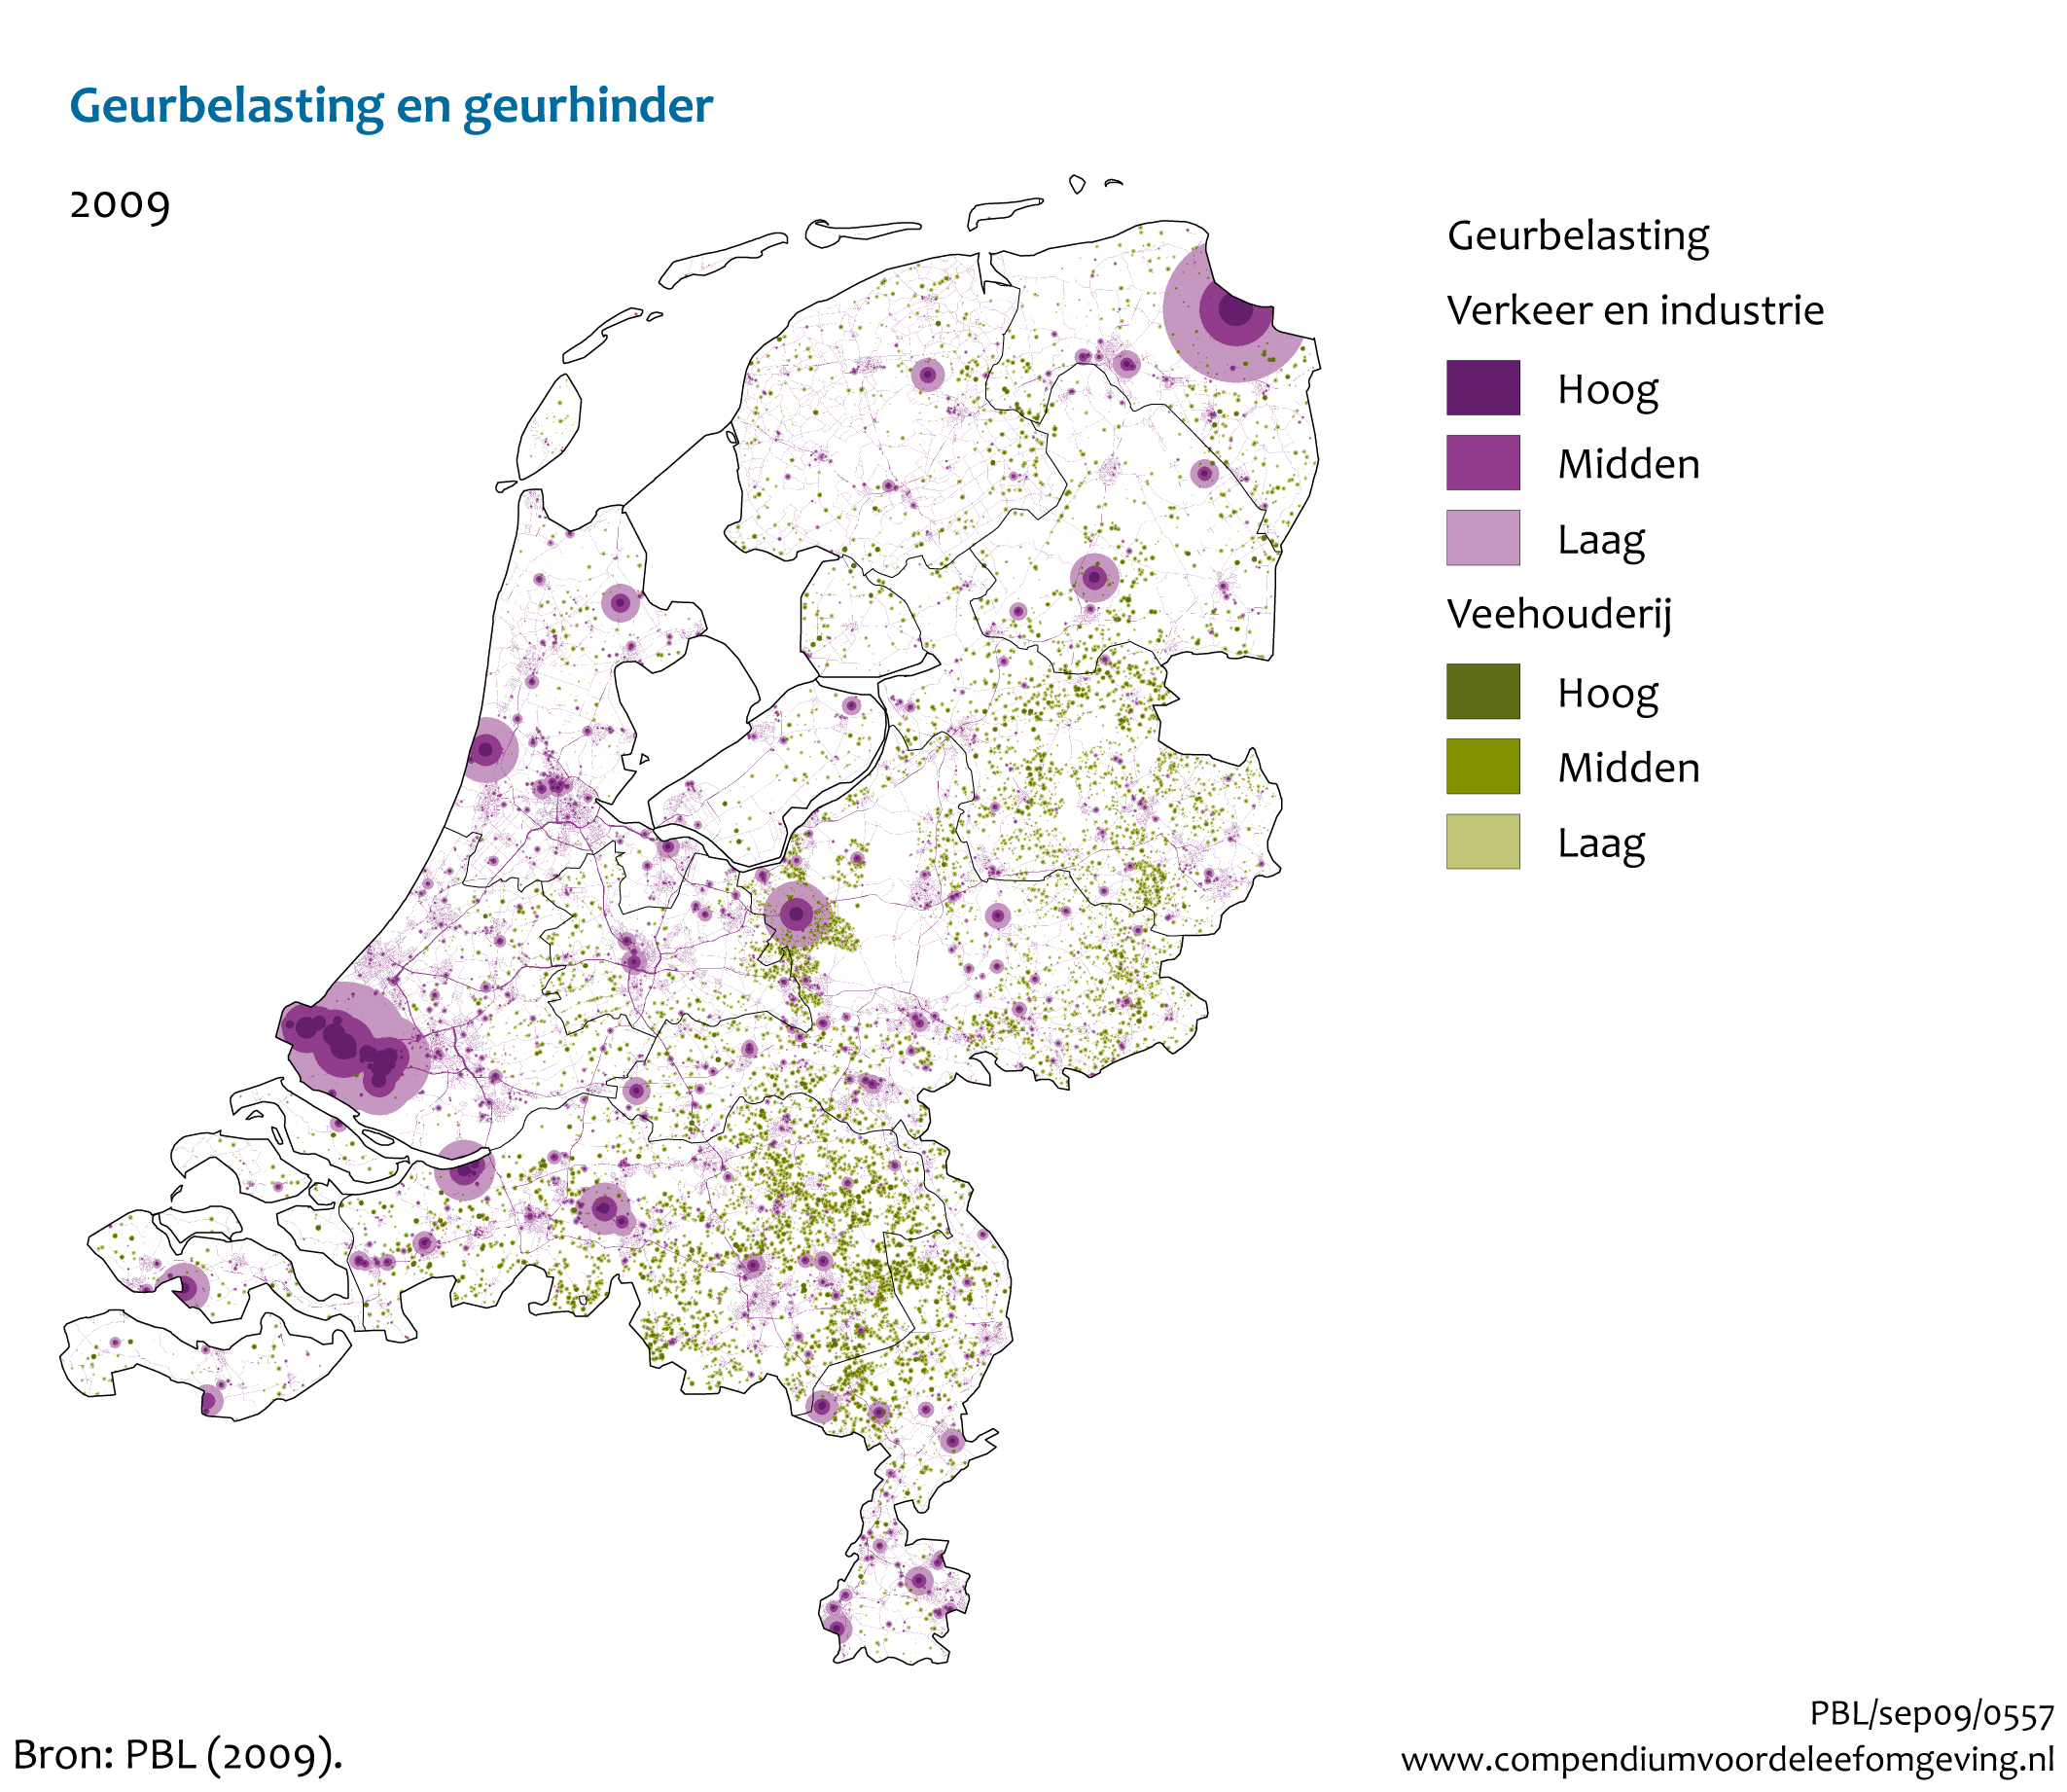 Figuur Indicatieve geurkaart voor Nederland met geurcontouren van industrie, wegverkeer en agrarische bedrijven. In de rest van de tekst wordt deze figuur uitgebreider uitgelegd.